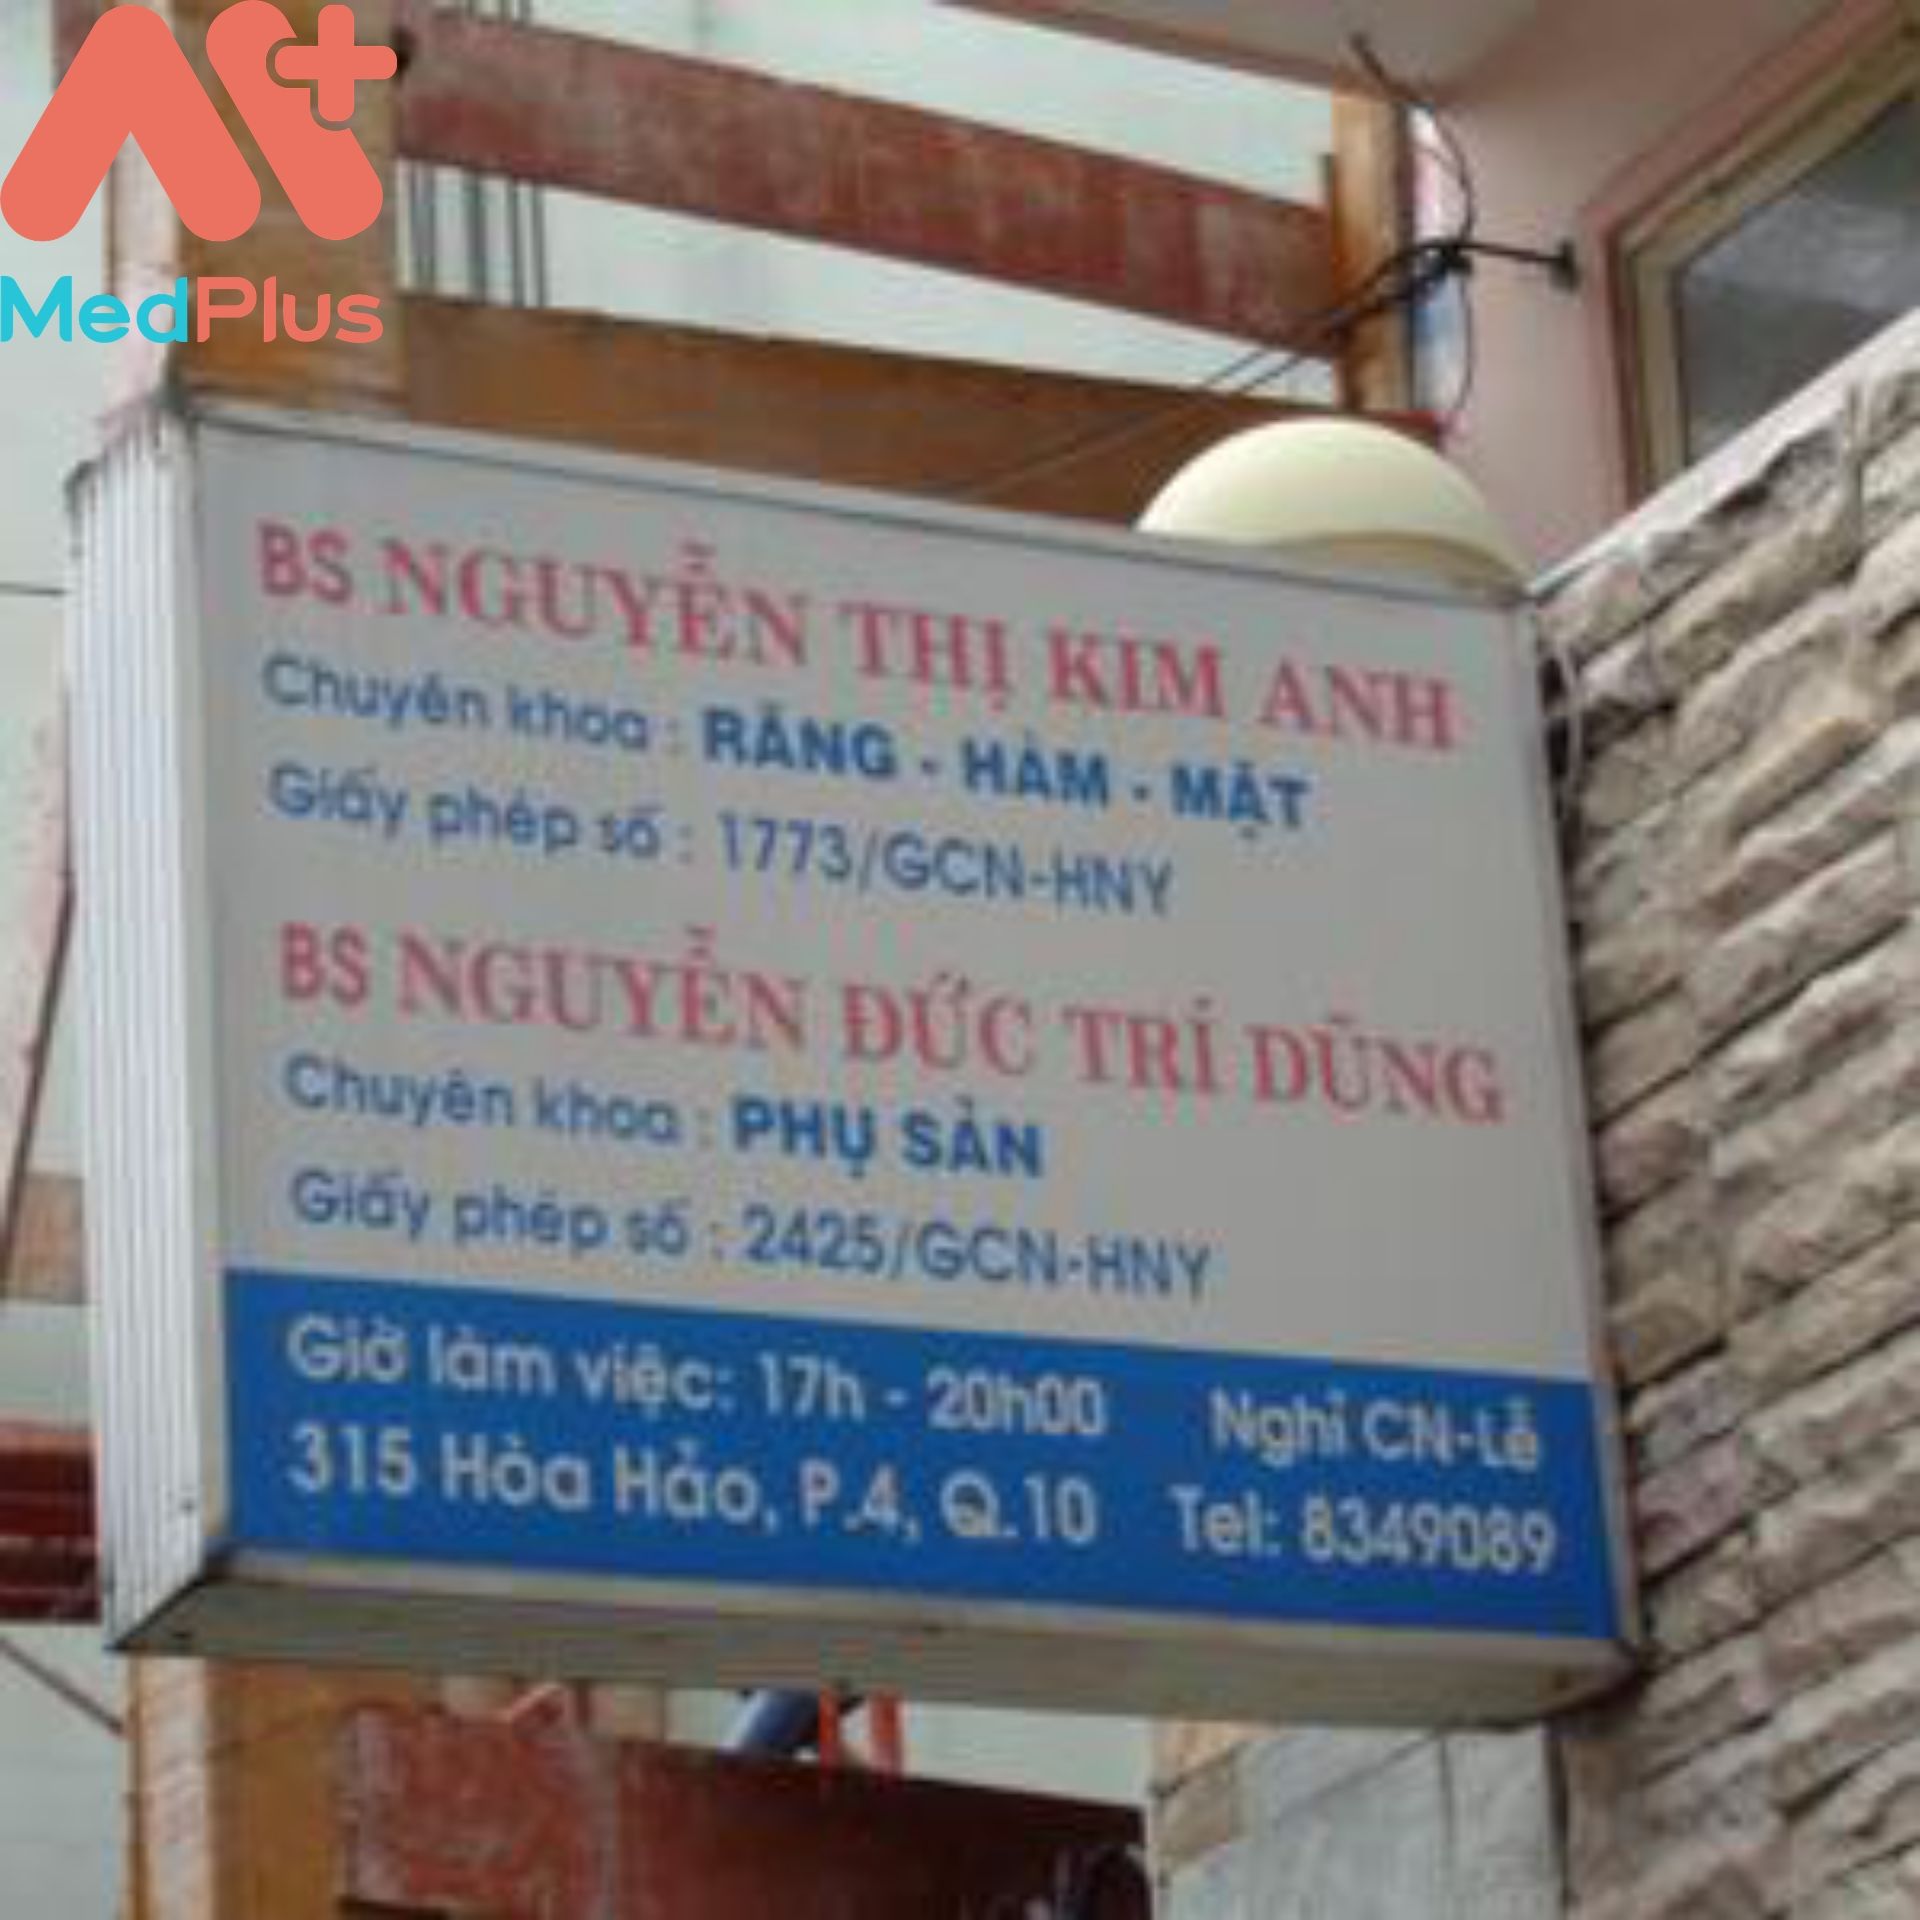 Phòng khám phụ khoa Bác sĩ Nguyễn Đức Trí Dũng